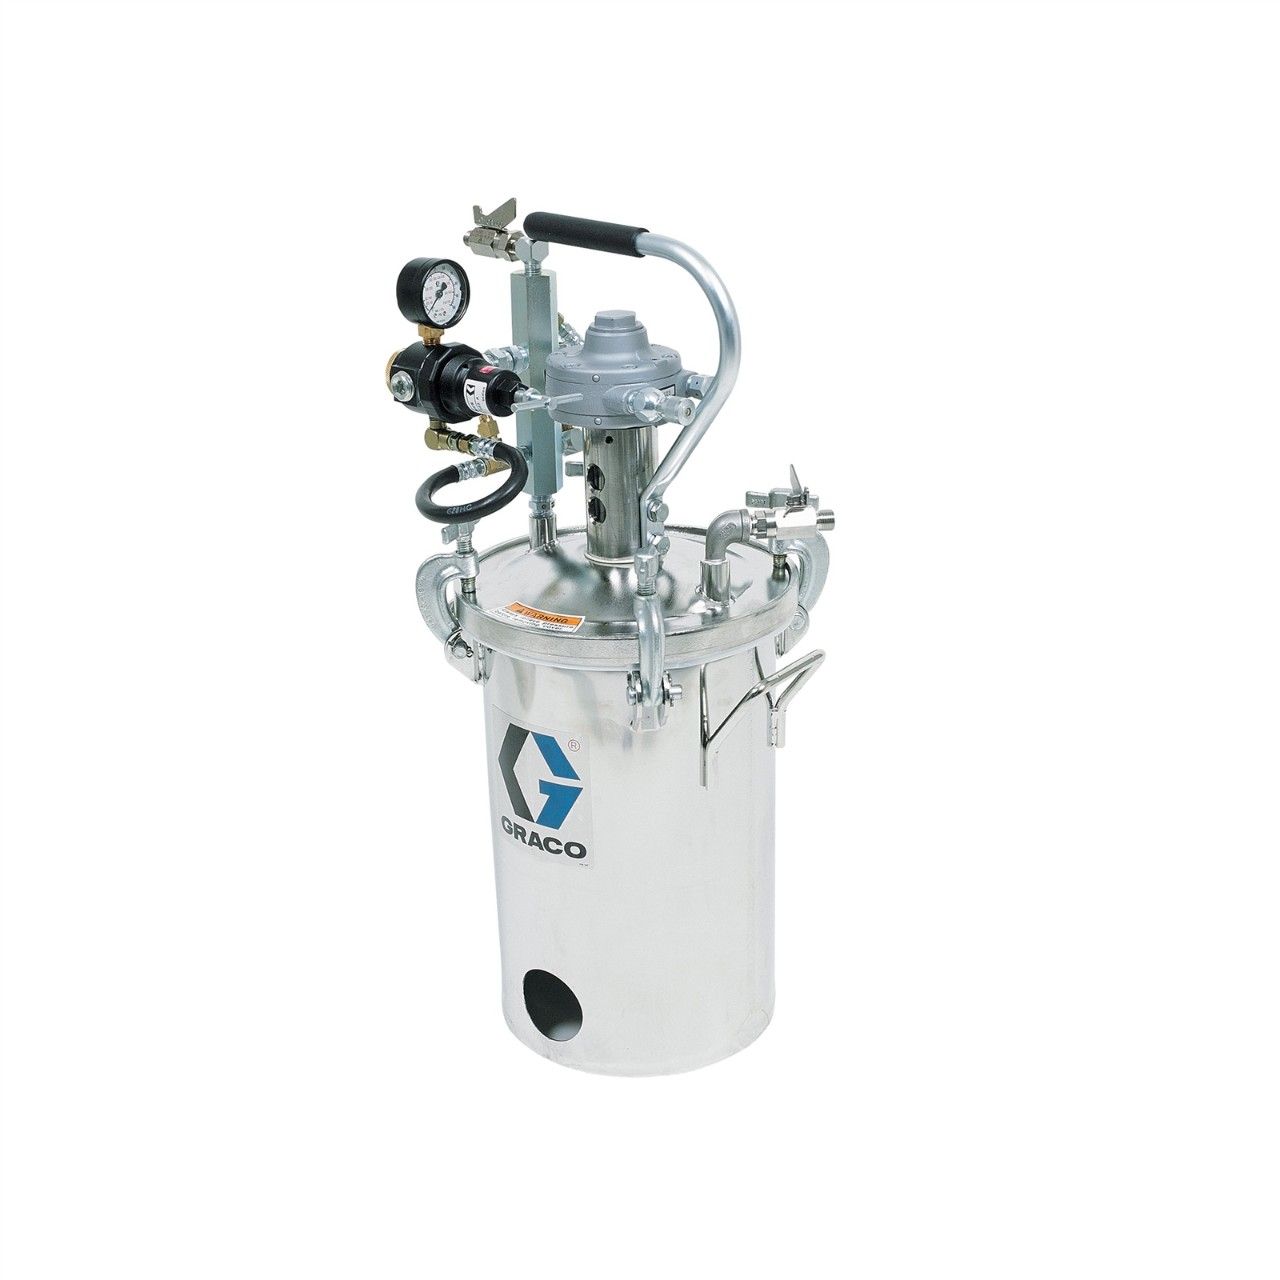 GRACO 2-Gallonen-Niederdruckbehälter (HVLP), Behälter mit Rührwerk - 236156